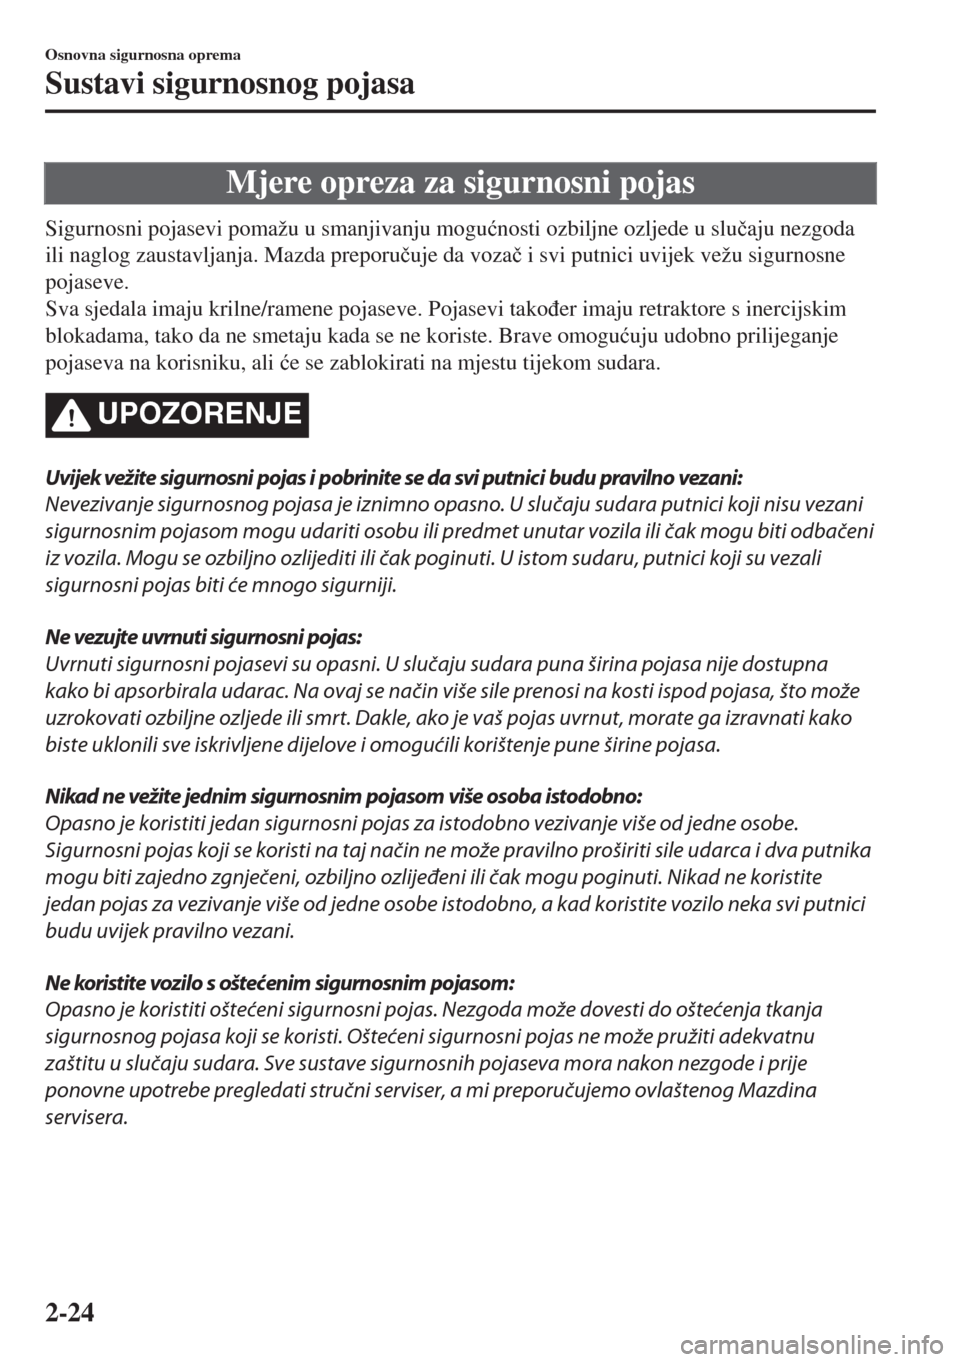 MAZDA MODEL 6 2018  Upute za uporabu (in Croatian) Mjere opreza za sigurnosni pojas
Sigurnosni pojasevi pomažu u smanjivanju mogu�ünosti ozbiljne ozljede u slu�þaju nezgoda
ili naglog zaustavljanja. Mazda preporu�þuje da voza�þ i svi putnici uvij